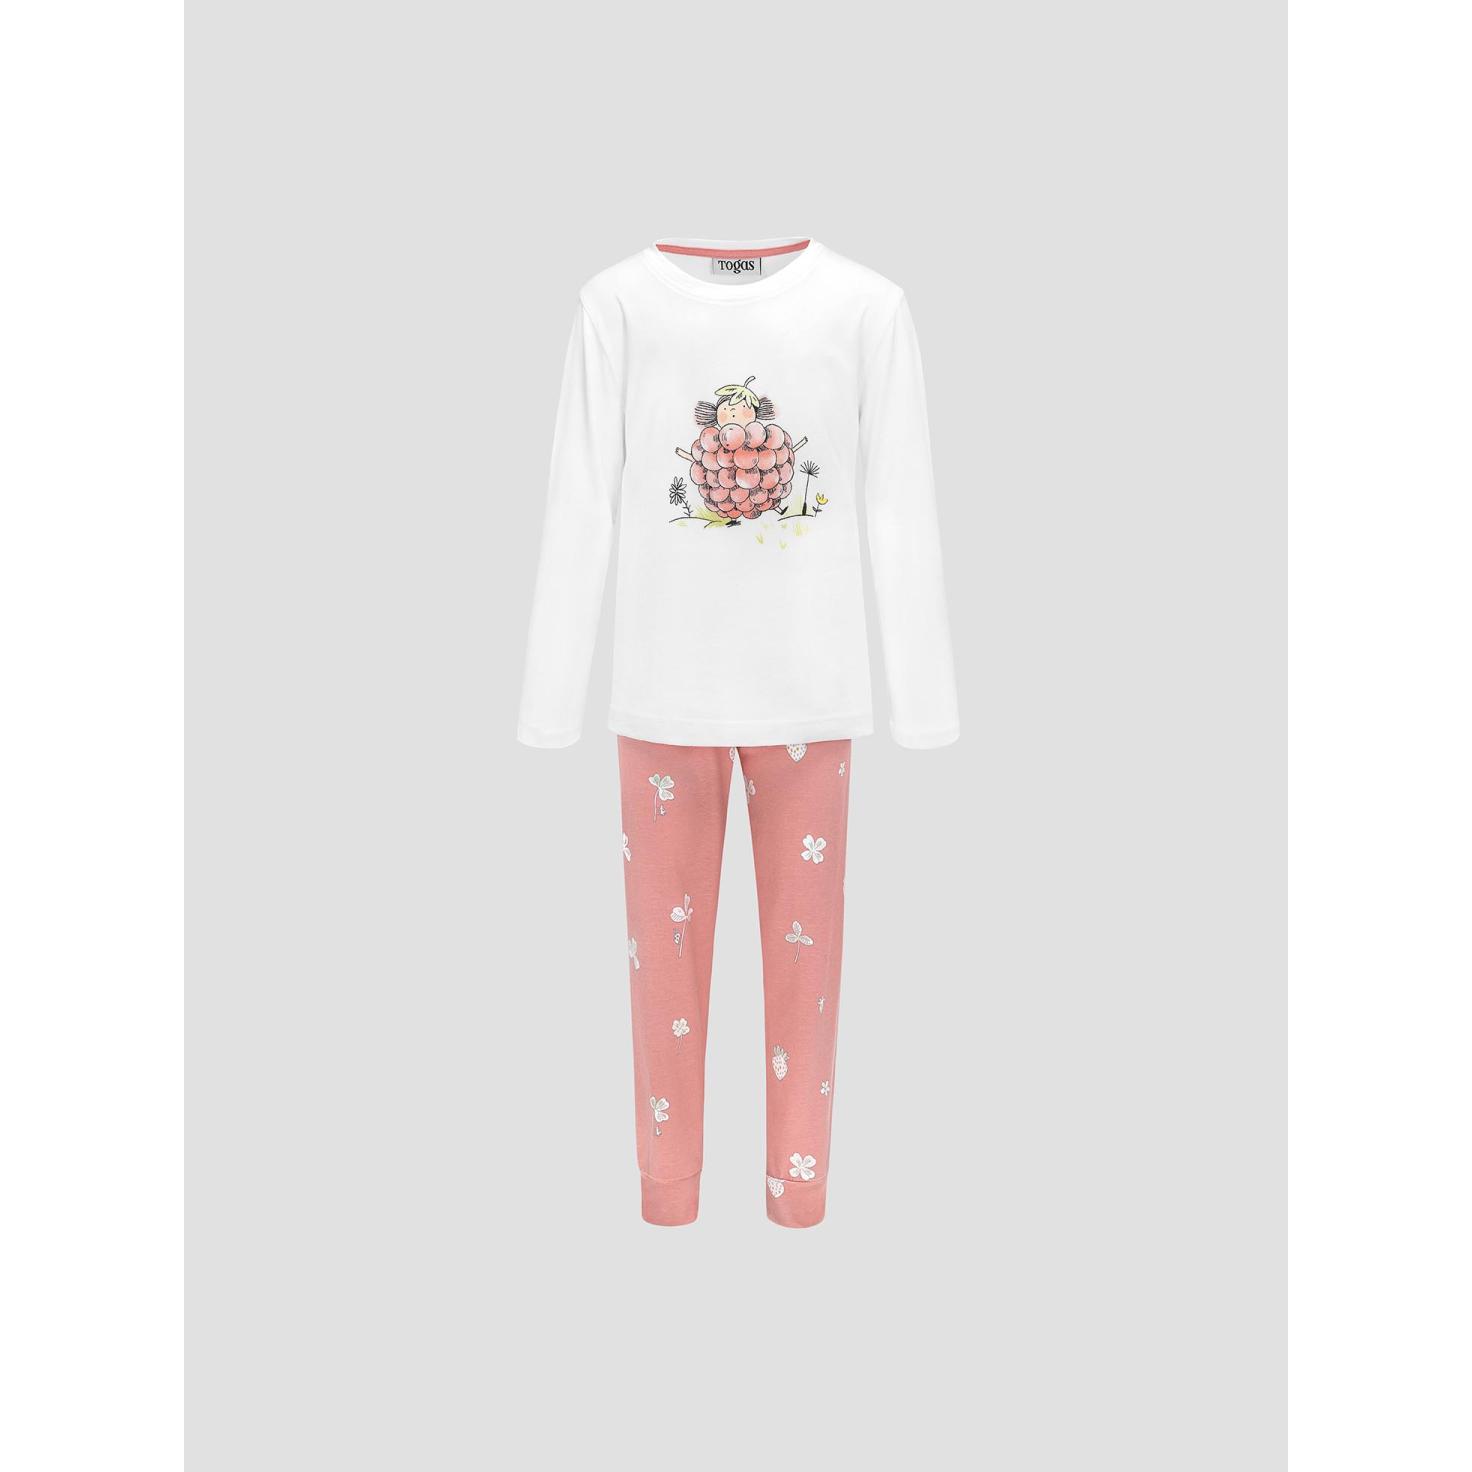 Пижама для девочек Kids by togas Стробби бело-розовый 140-146 см жен пижама с шортами инь янь белый р 54